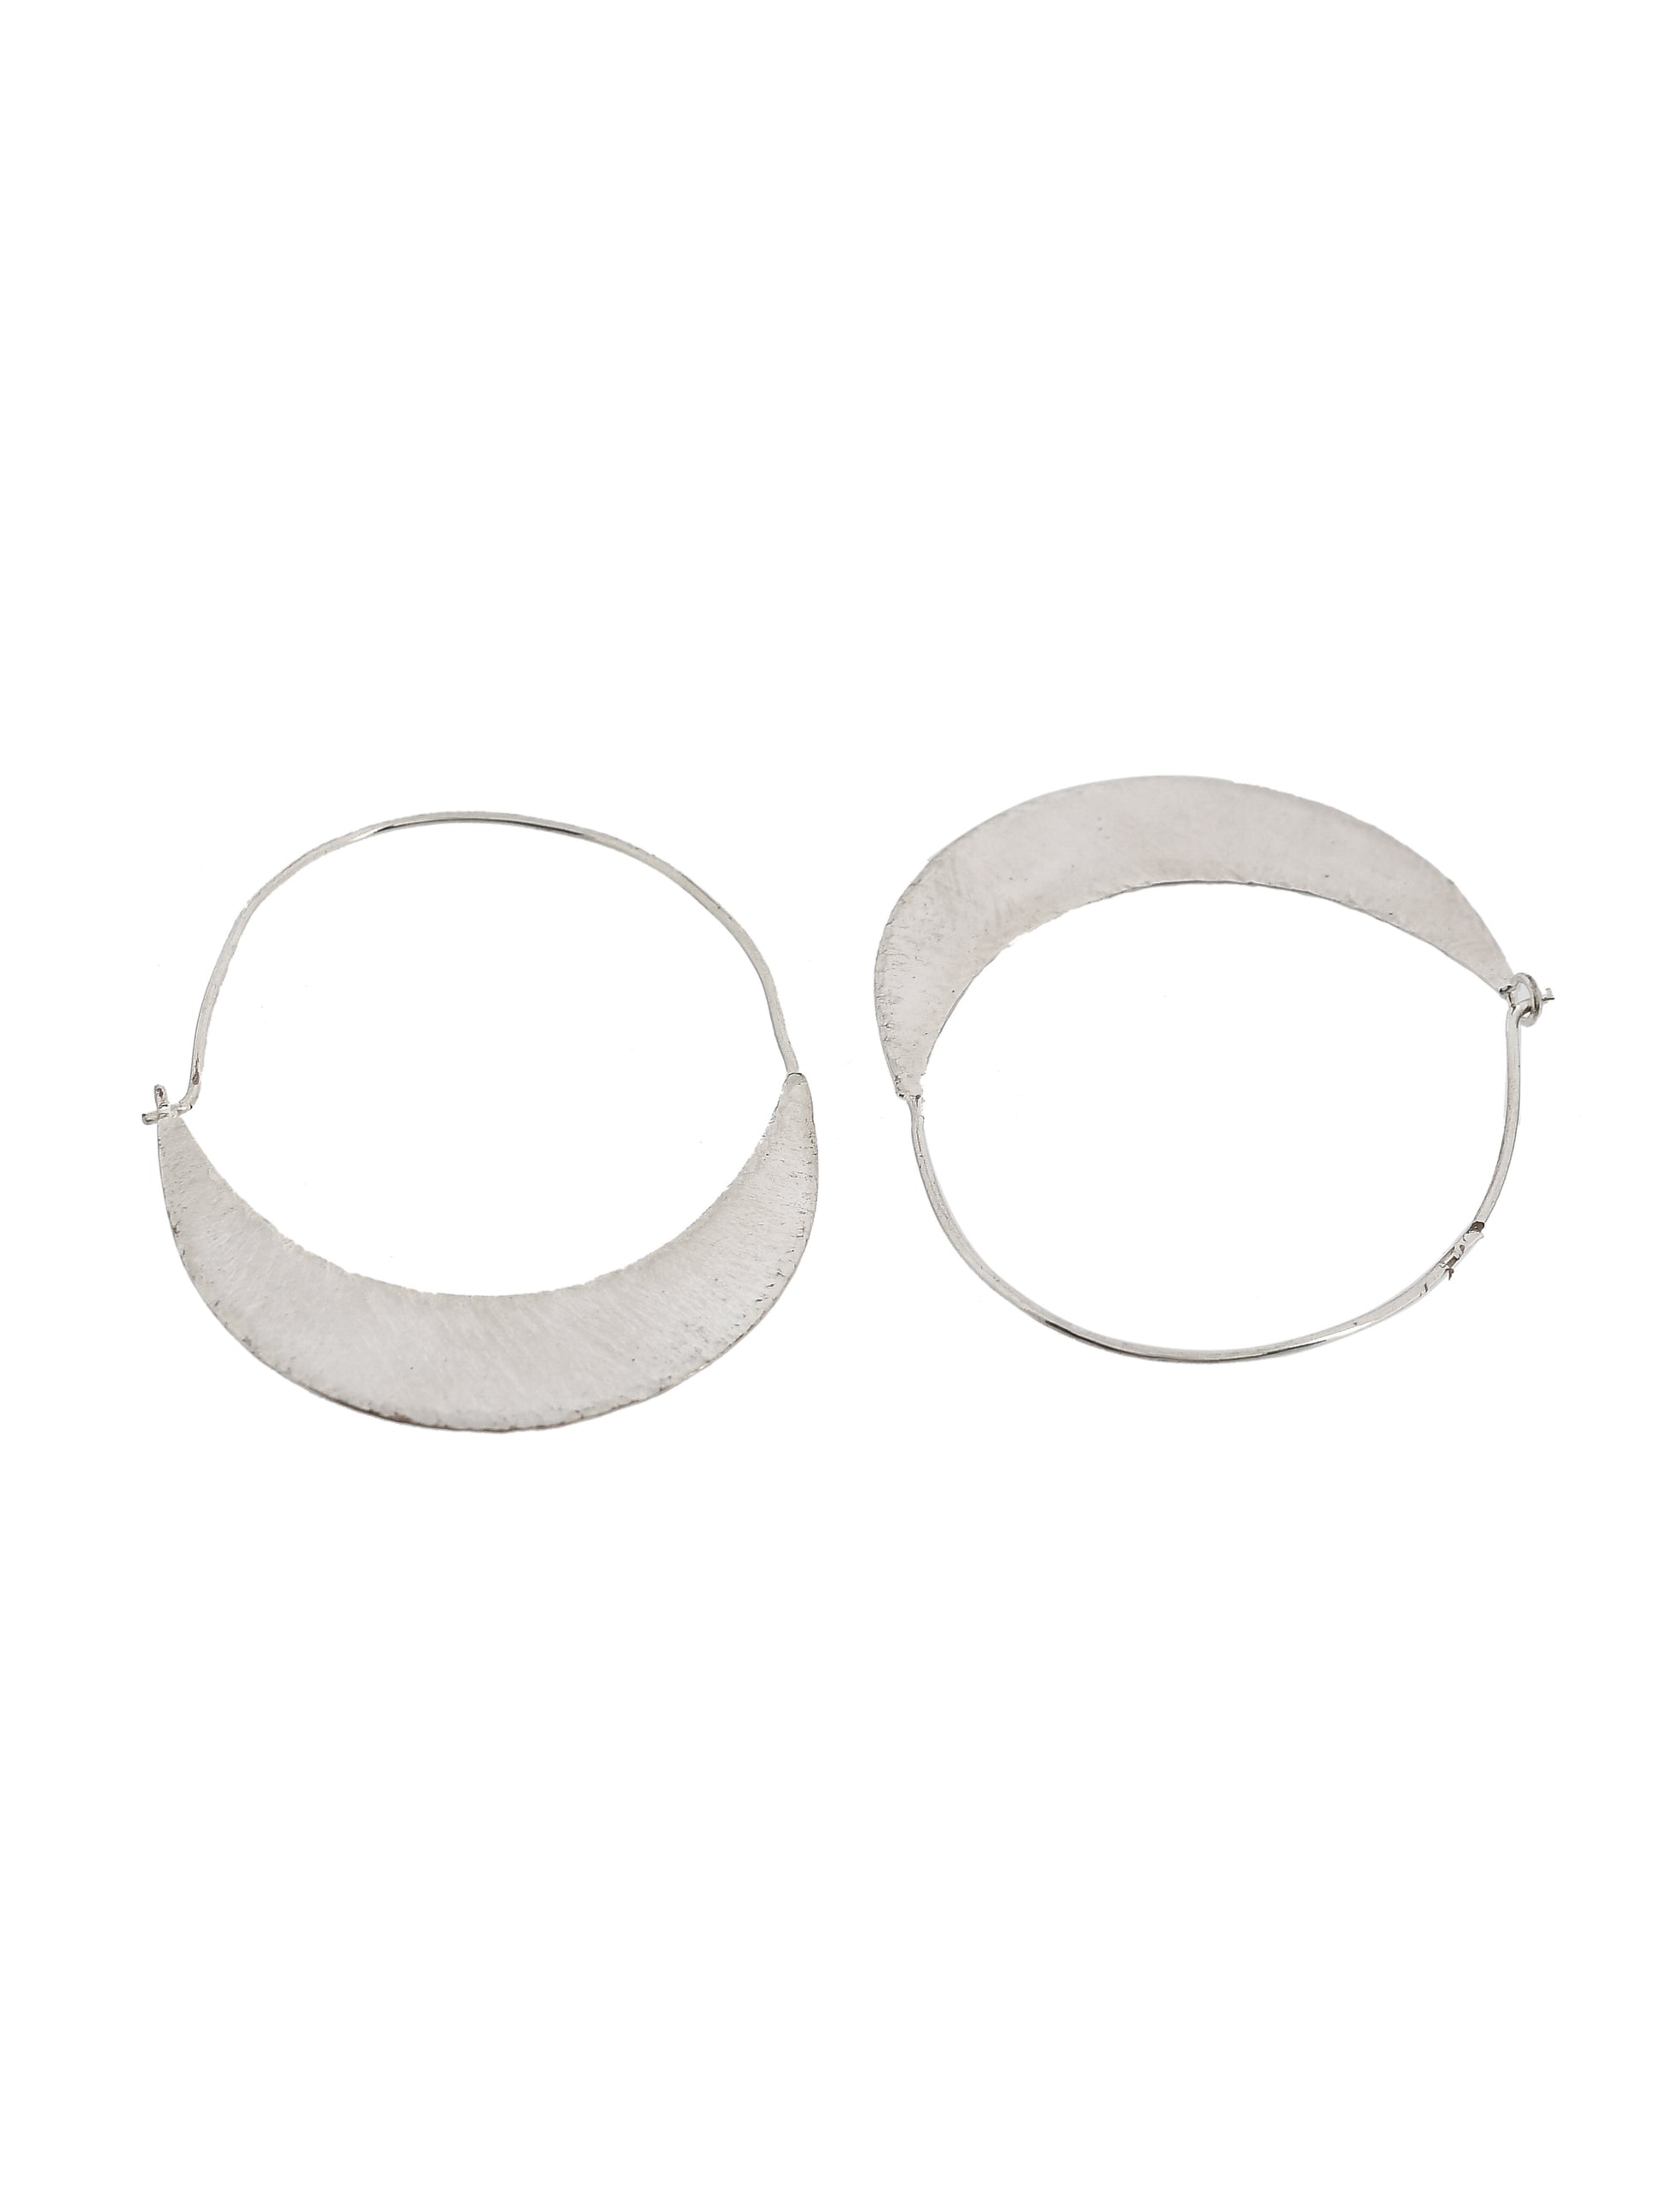 Silver Plated Circular Hoop Earrings